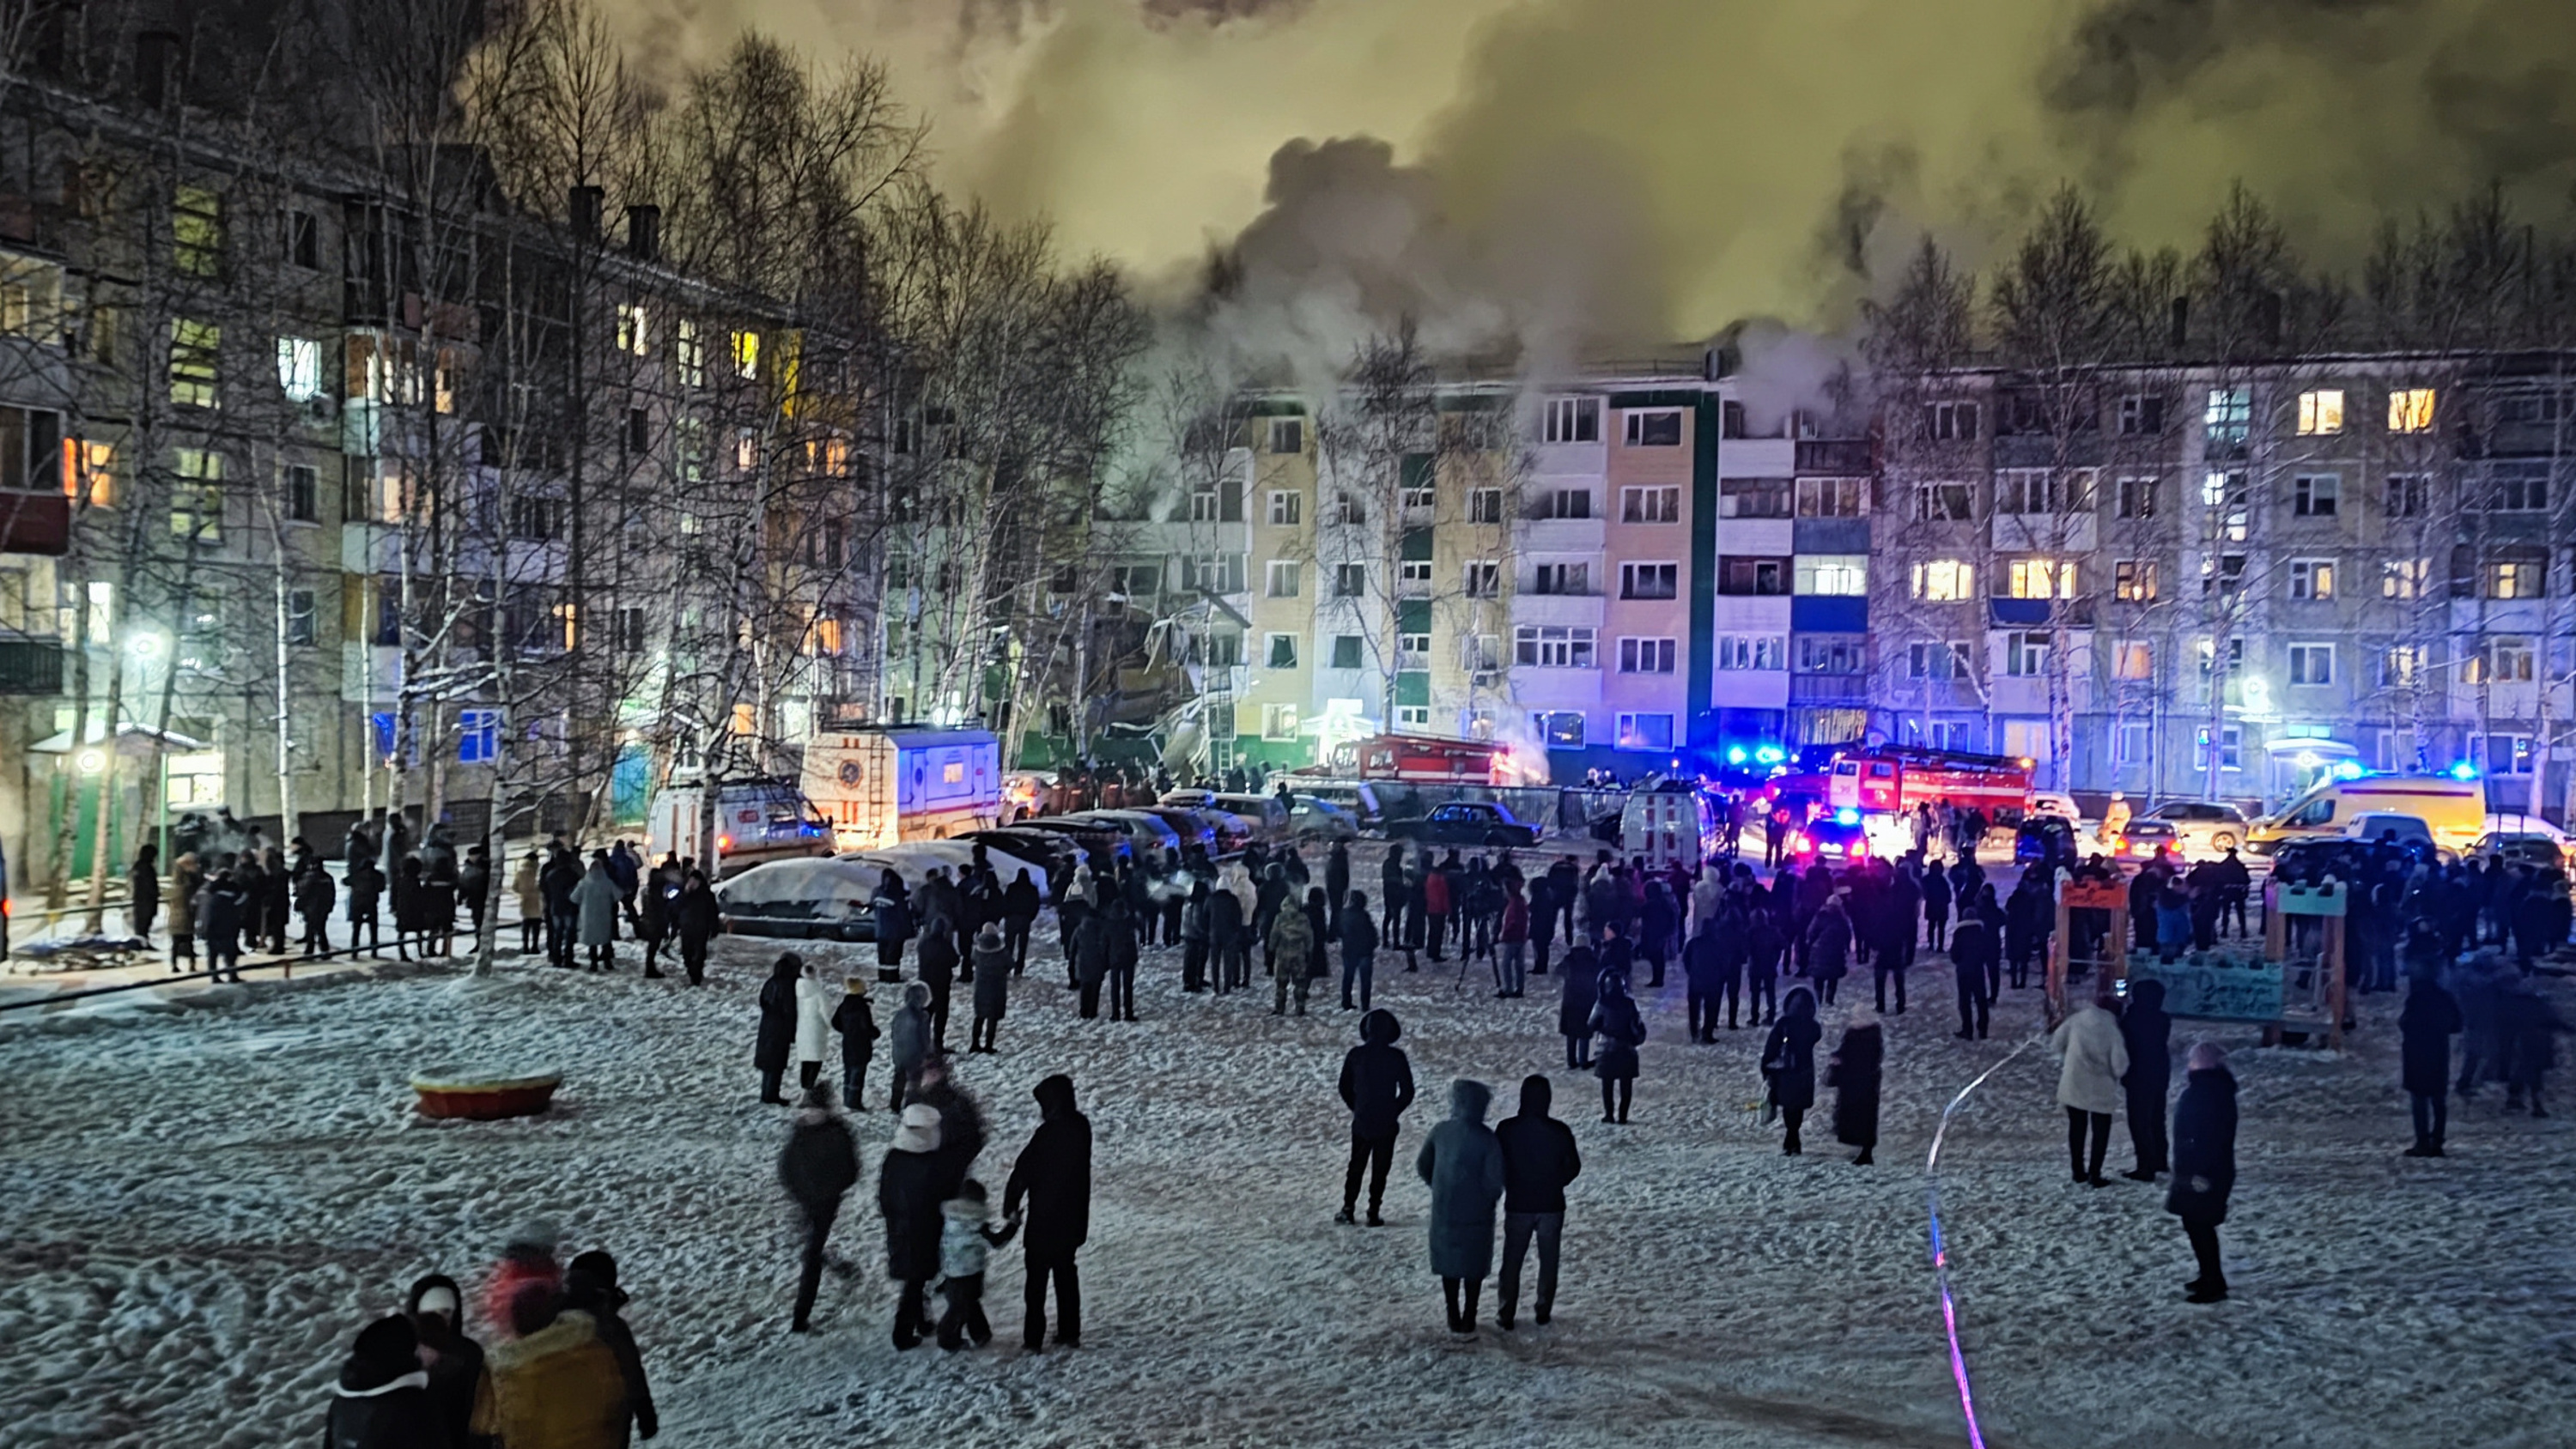 4 декабря 2020 год. Декабрь в городе. Люди в городе зимой. Взрыв дома в Нижневартовске.